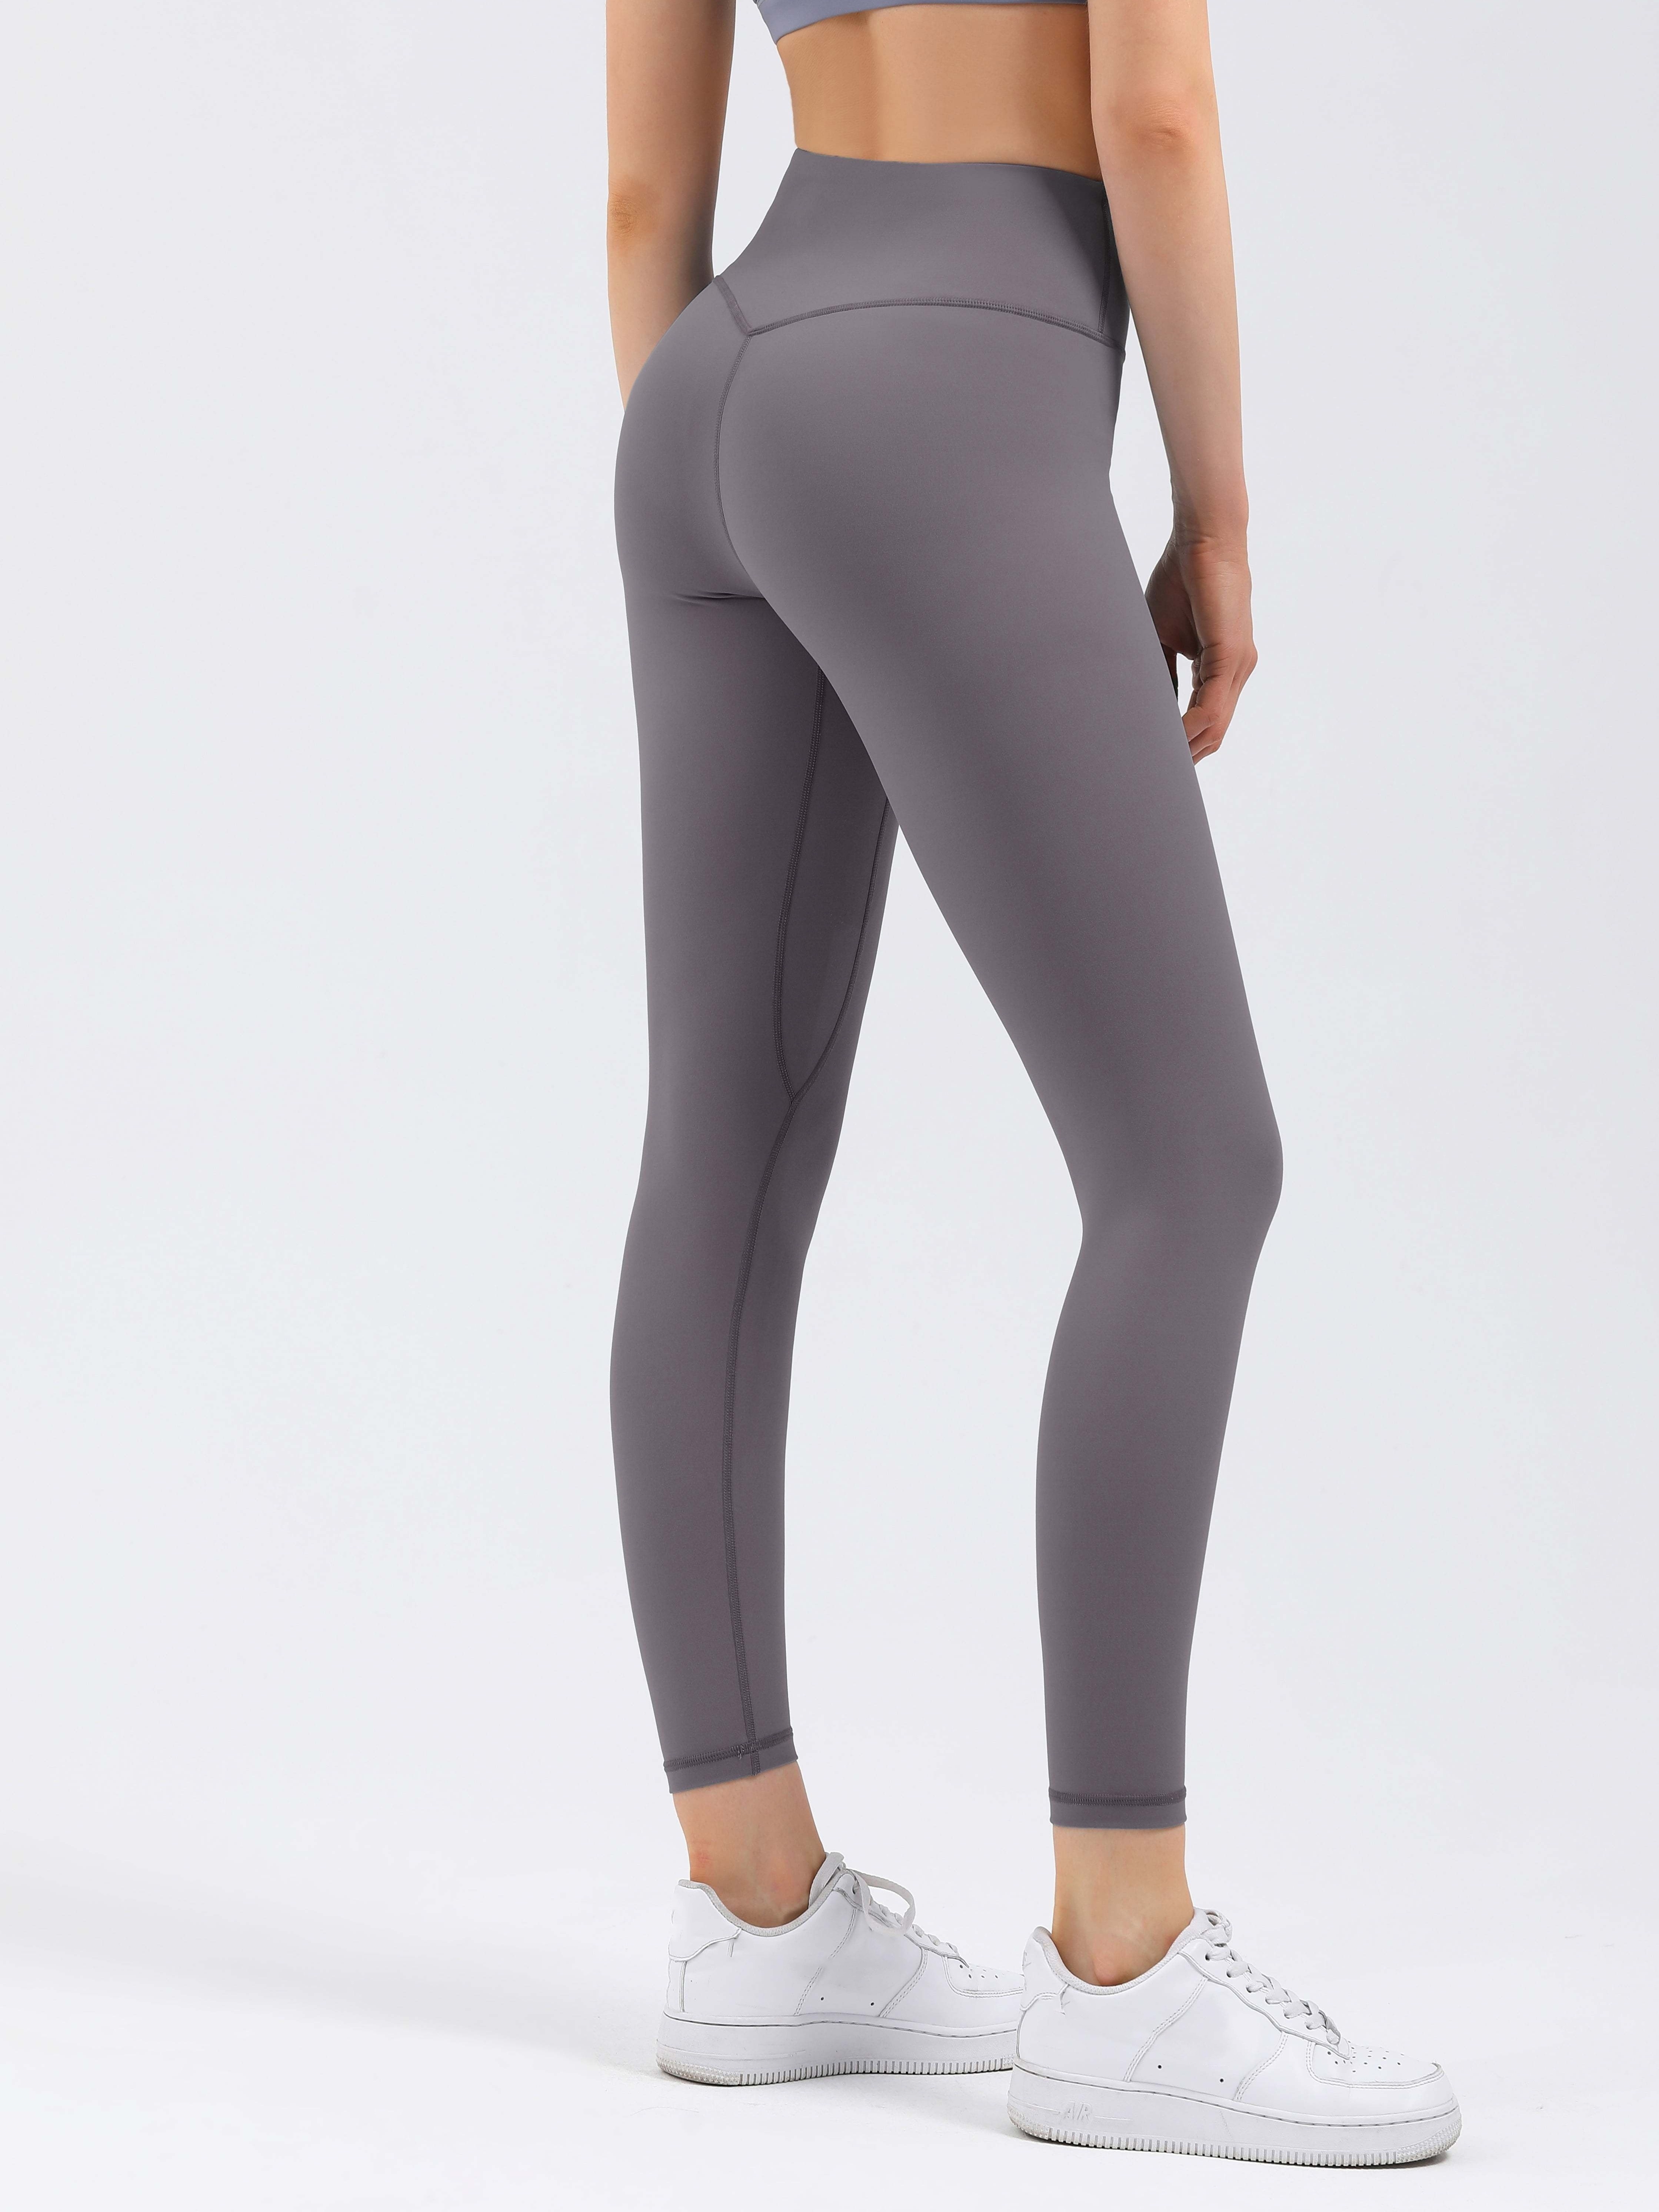 Women's Small Slate Grey Nike JUST DO IT Leggings - Depop